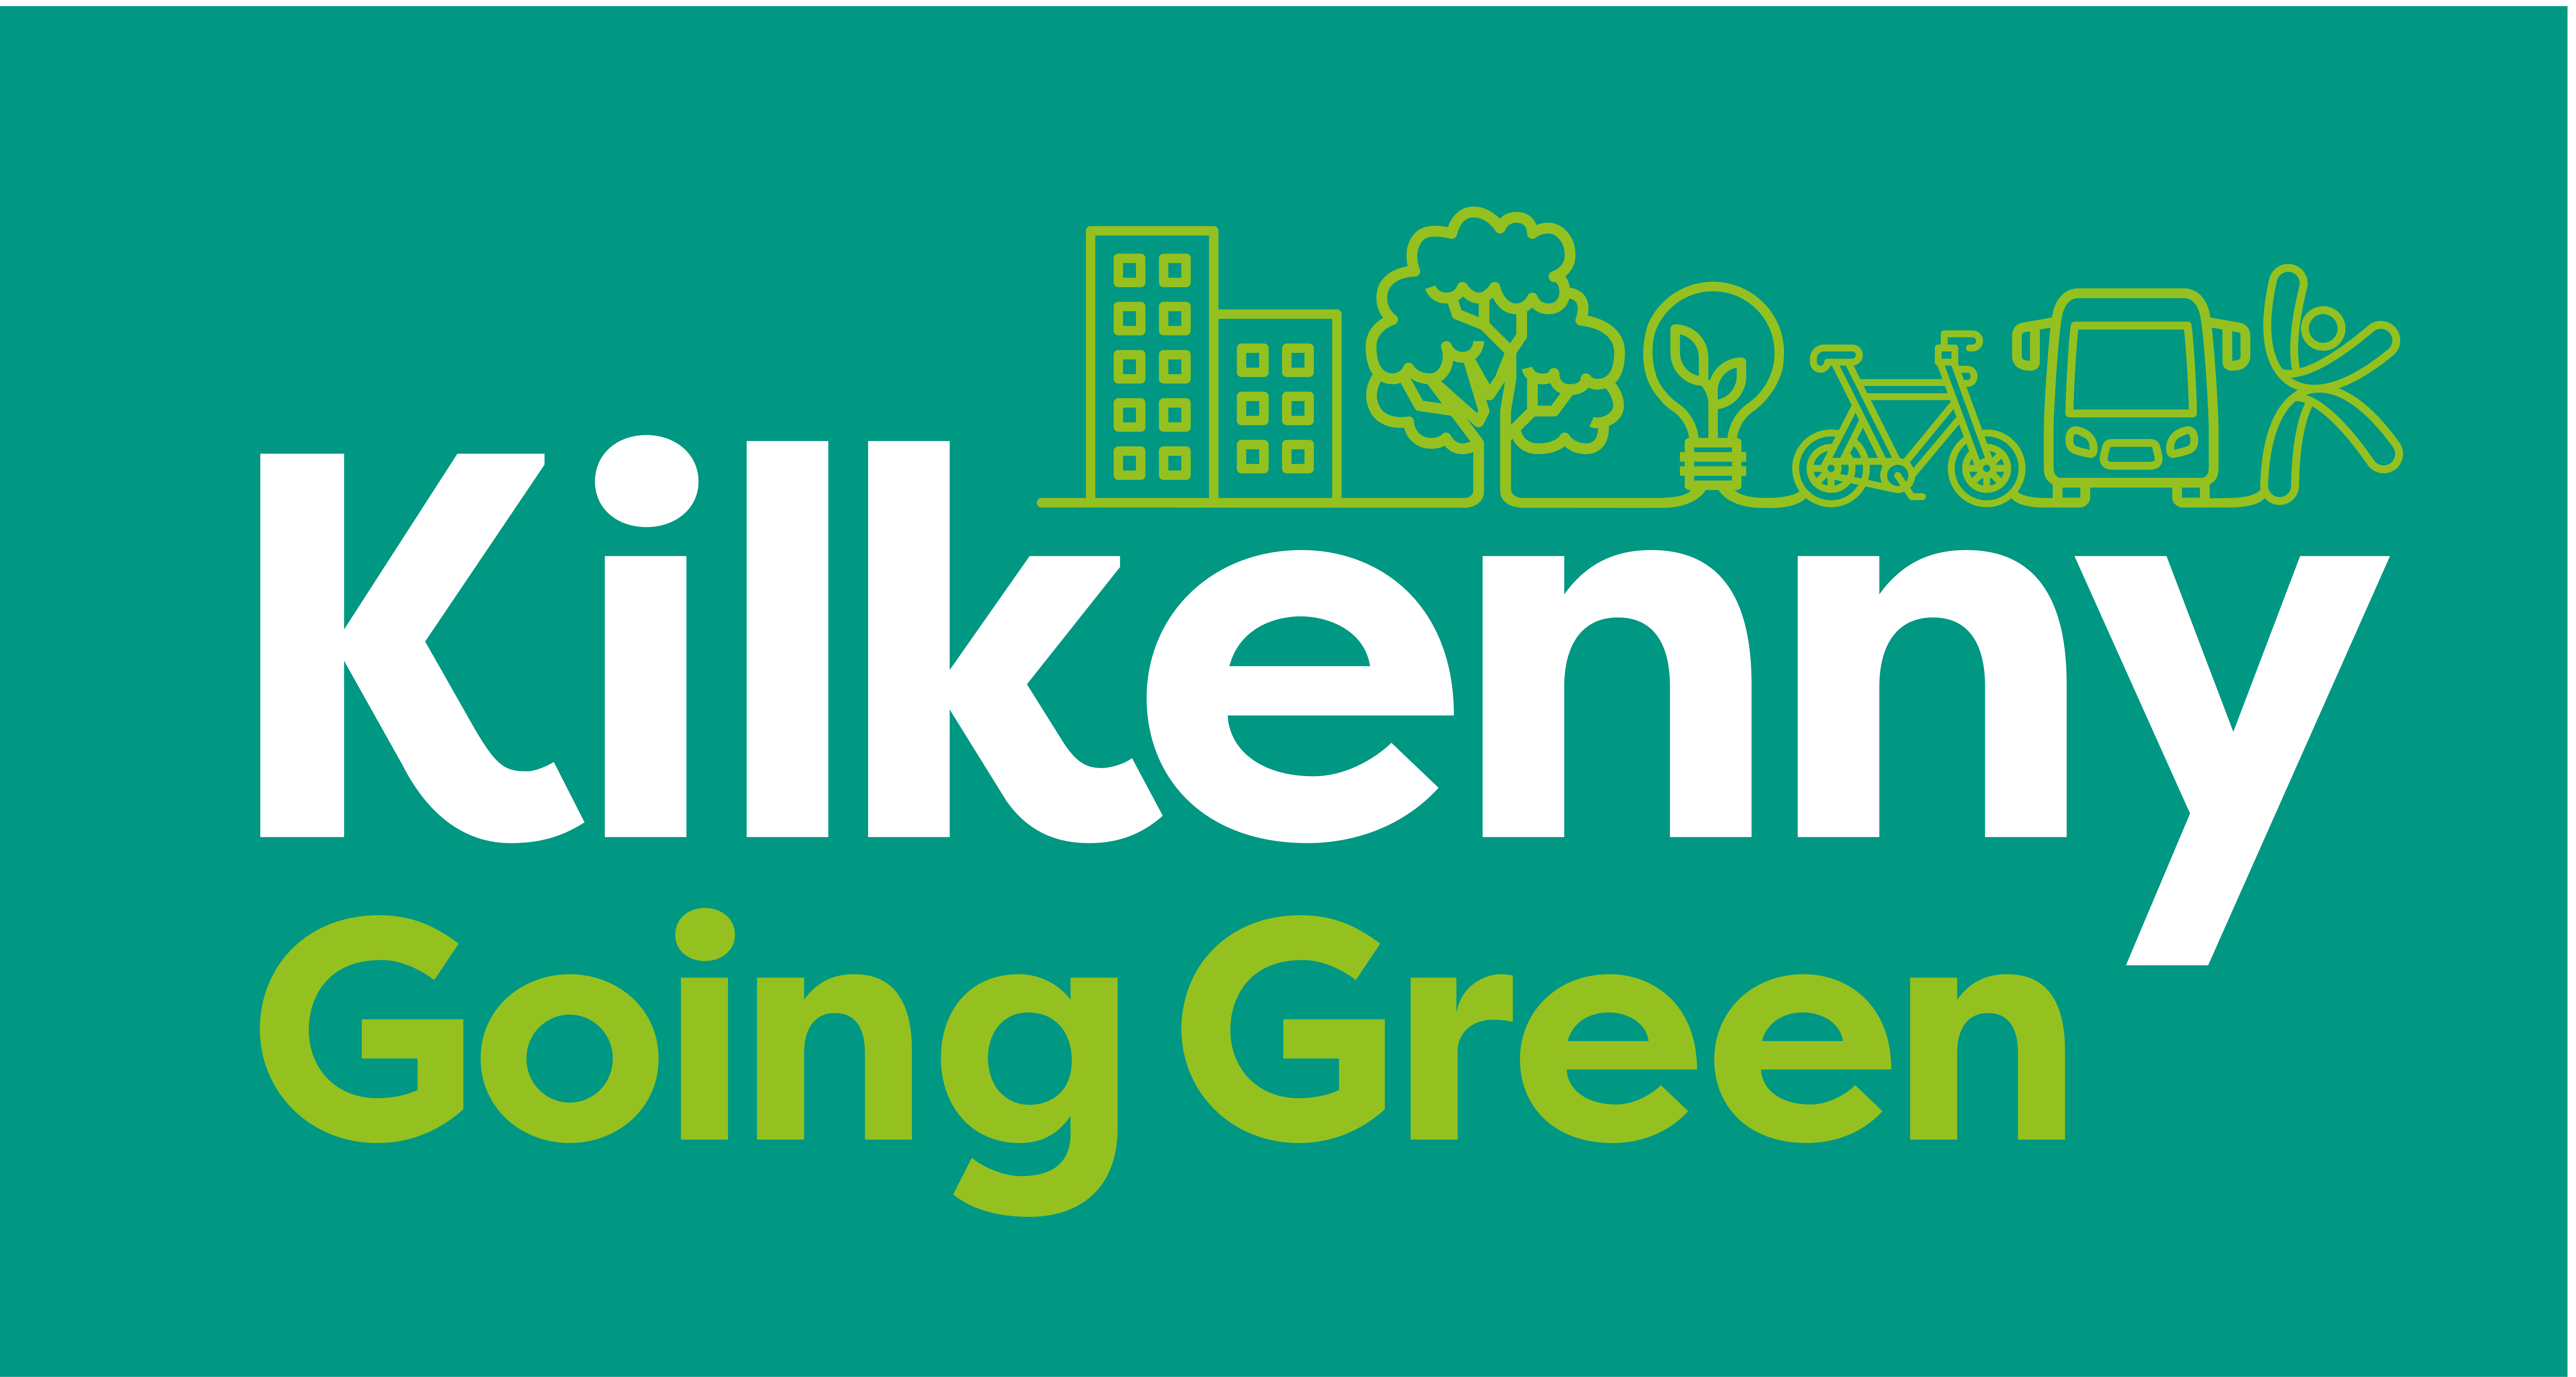 Kilkenny-Going-Green_основной-брендовый-цвет-обратный